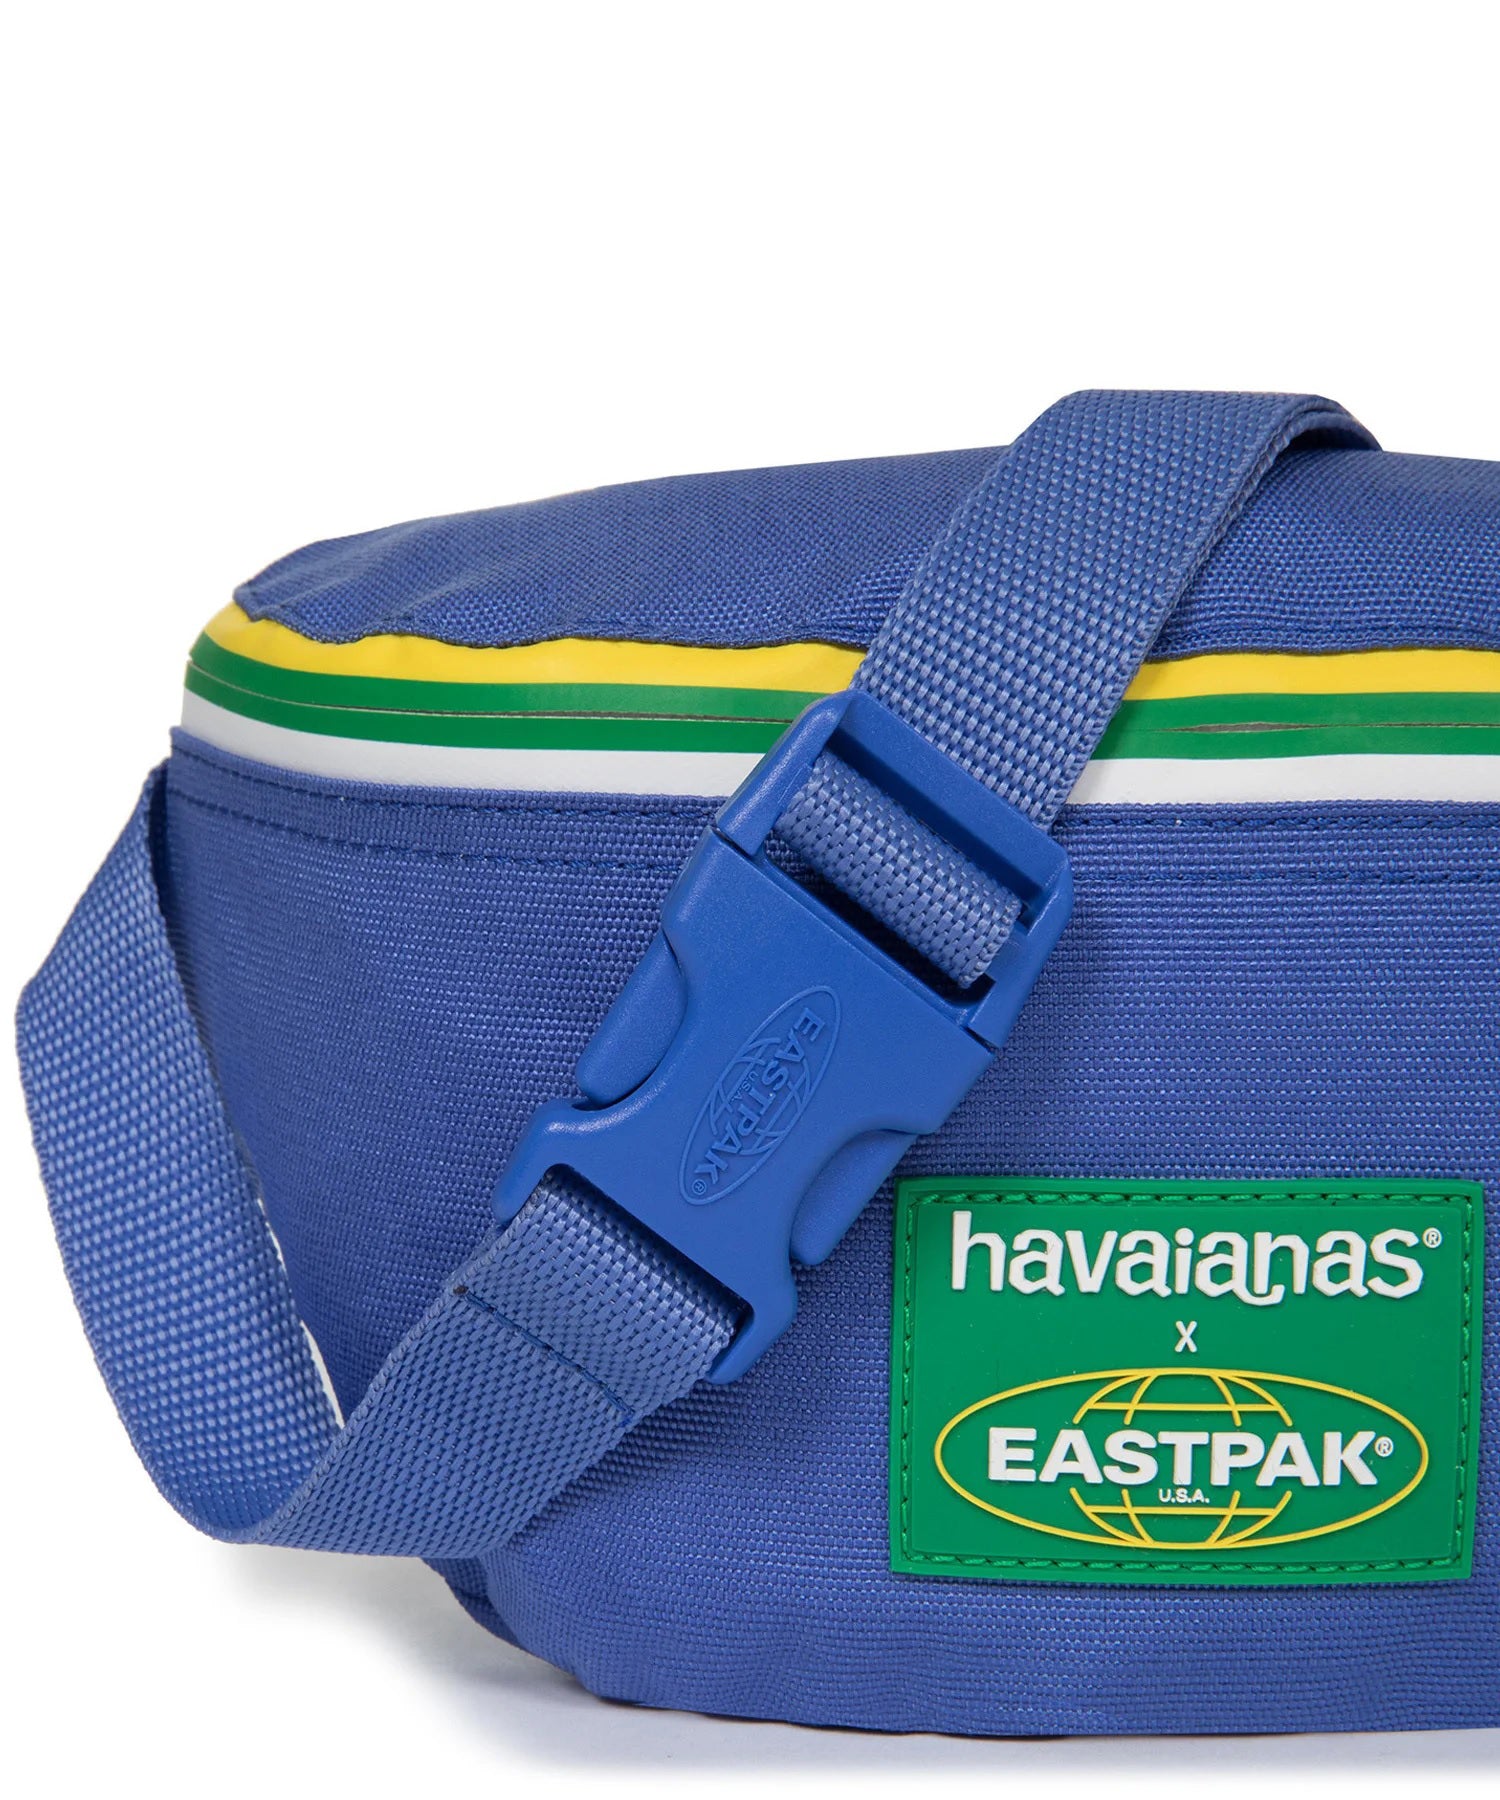 eastpak -springer riñonera havaianas colaboración con estpak -color azul-bolsillo trasero-cierre cremallera-producto impermeable y vegano.